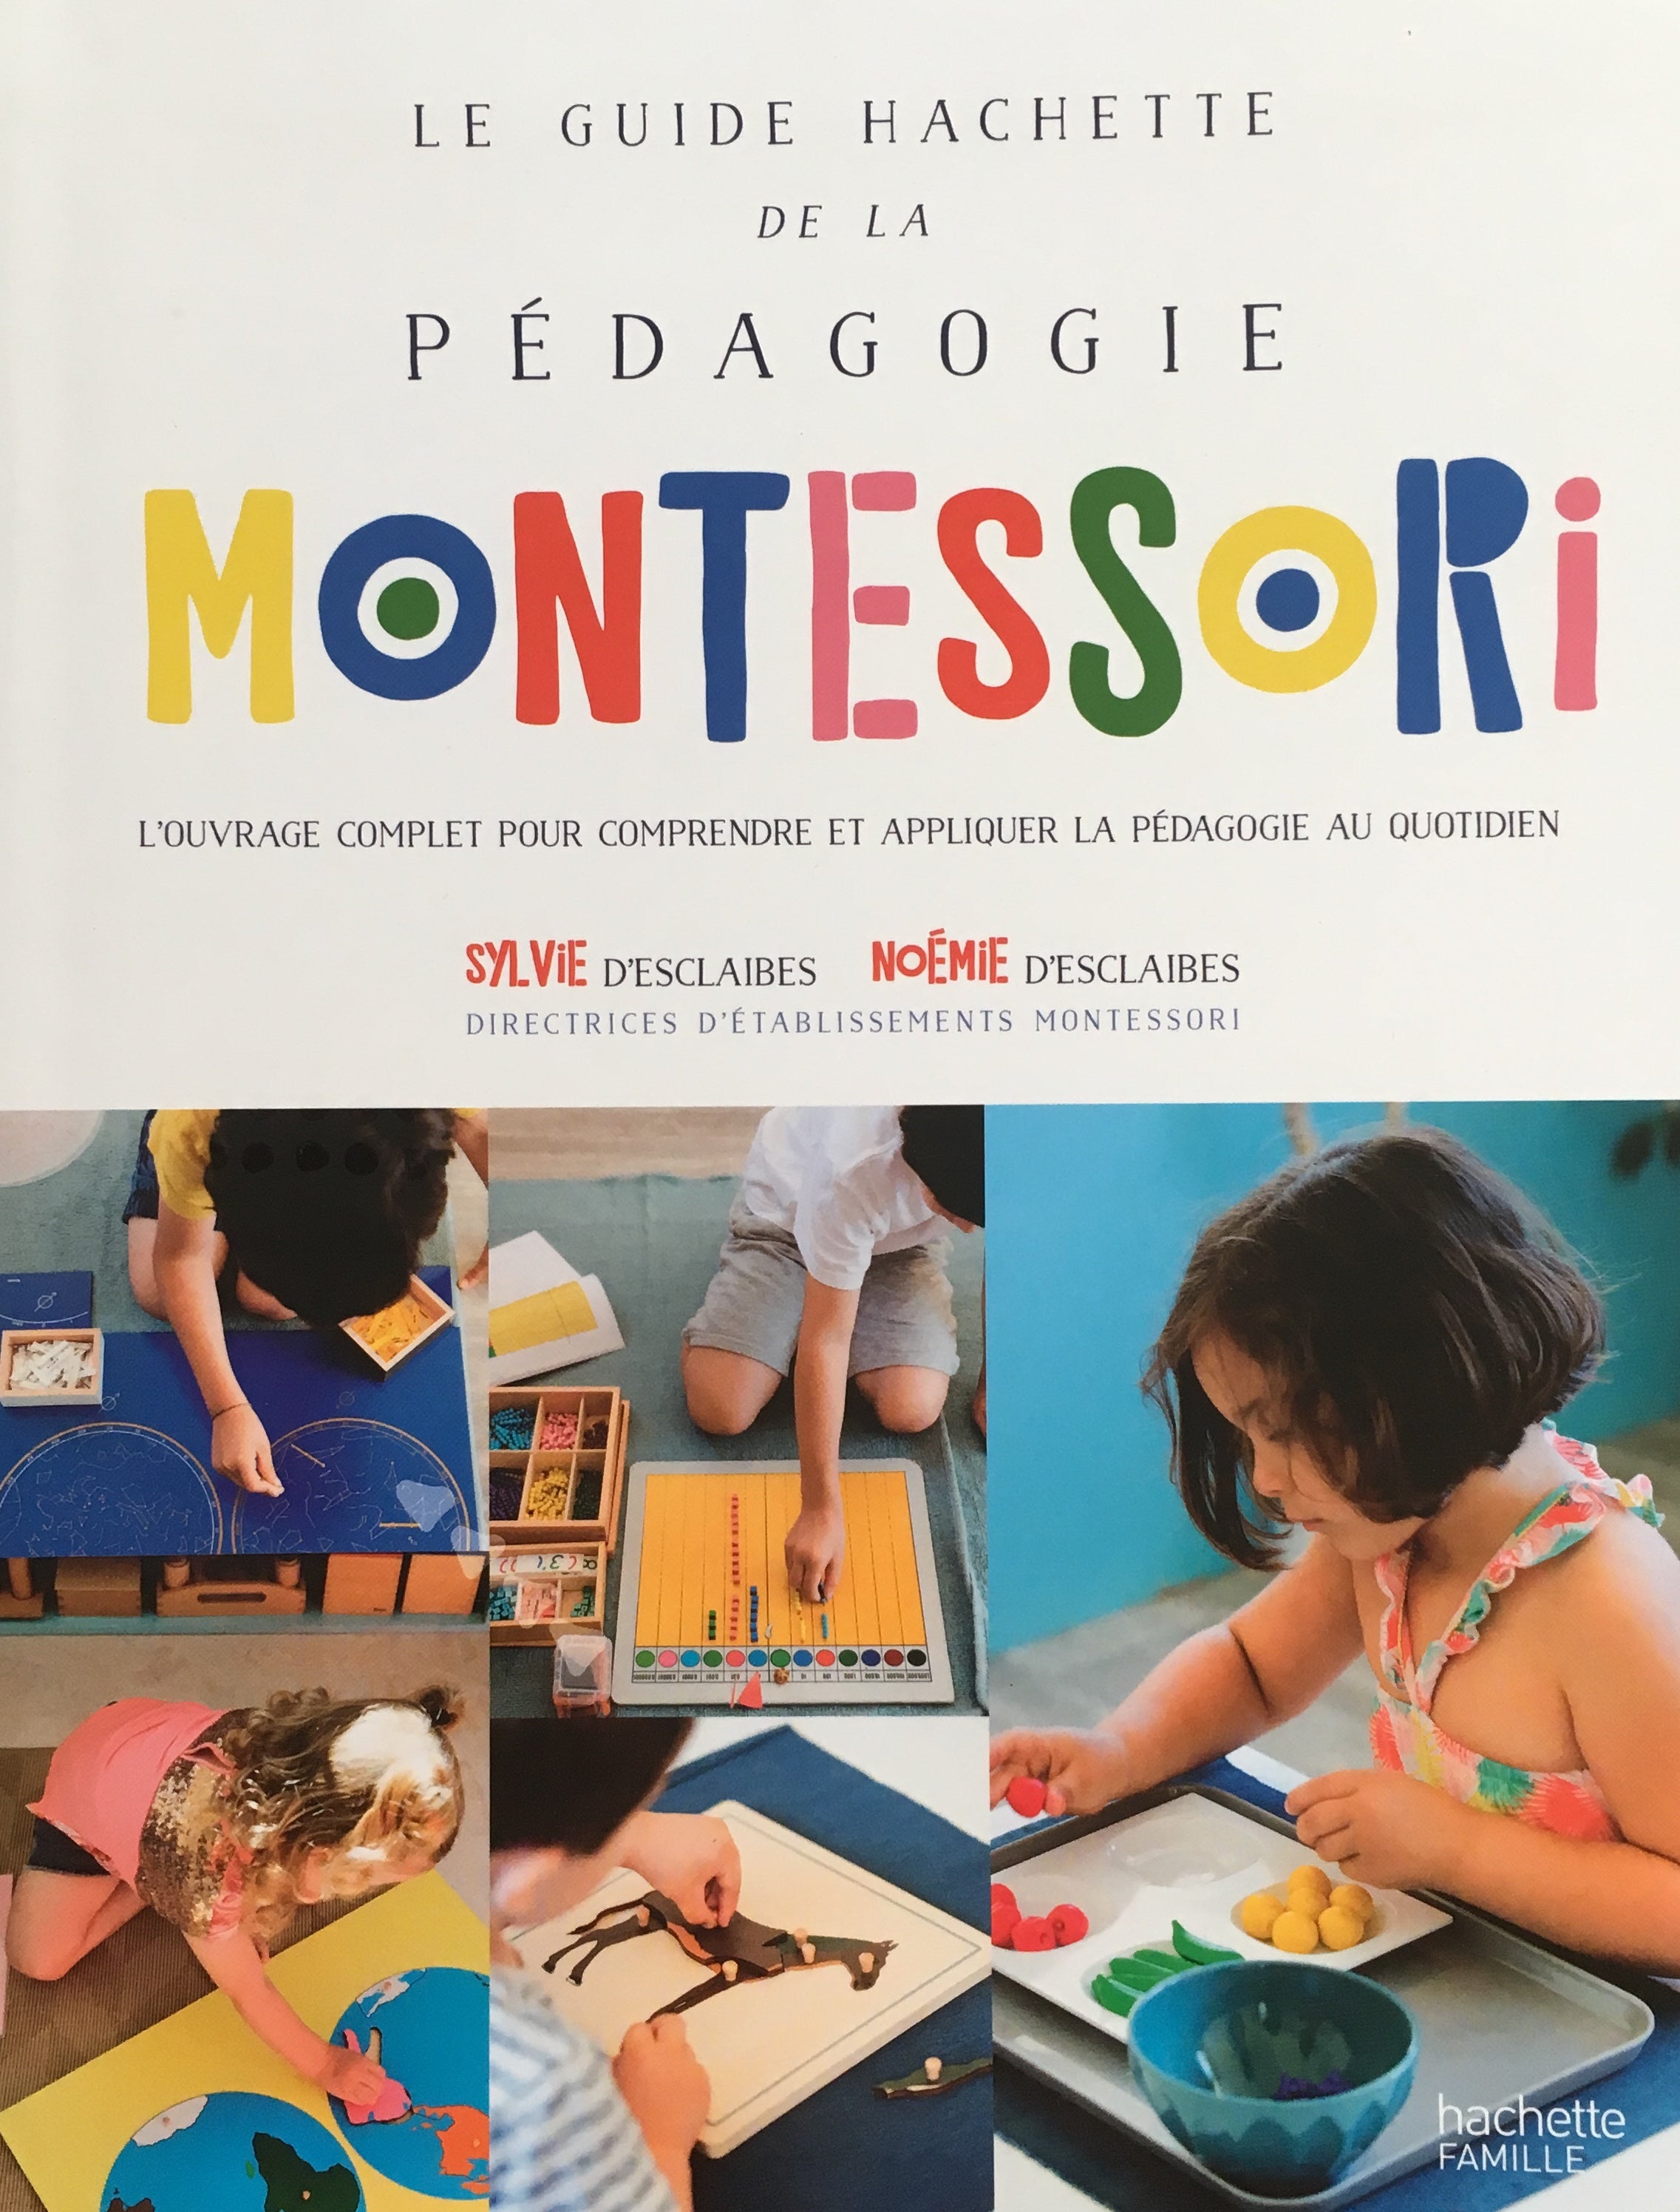 The Hachette Guide to Montessori Pedagogy